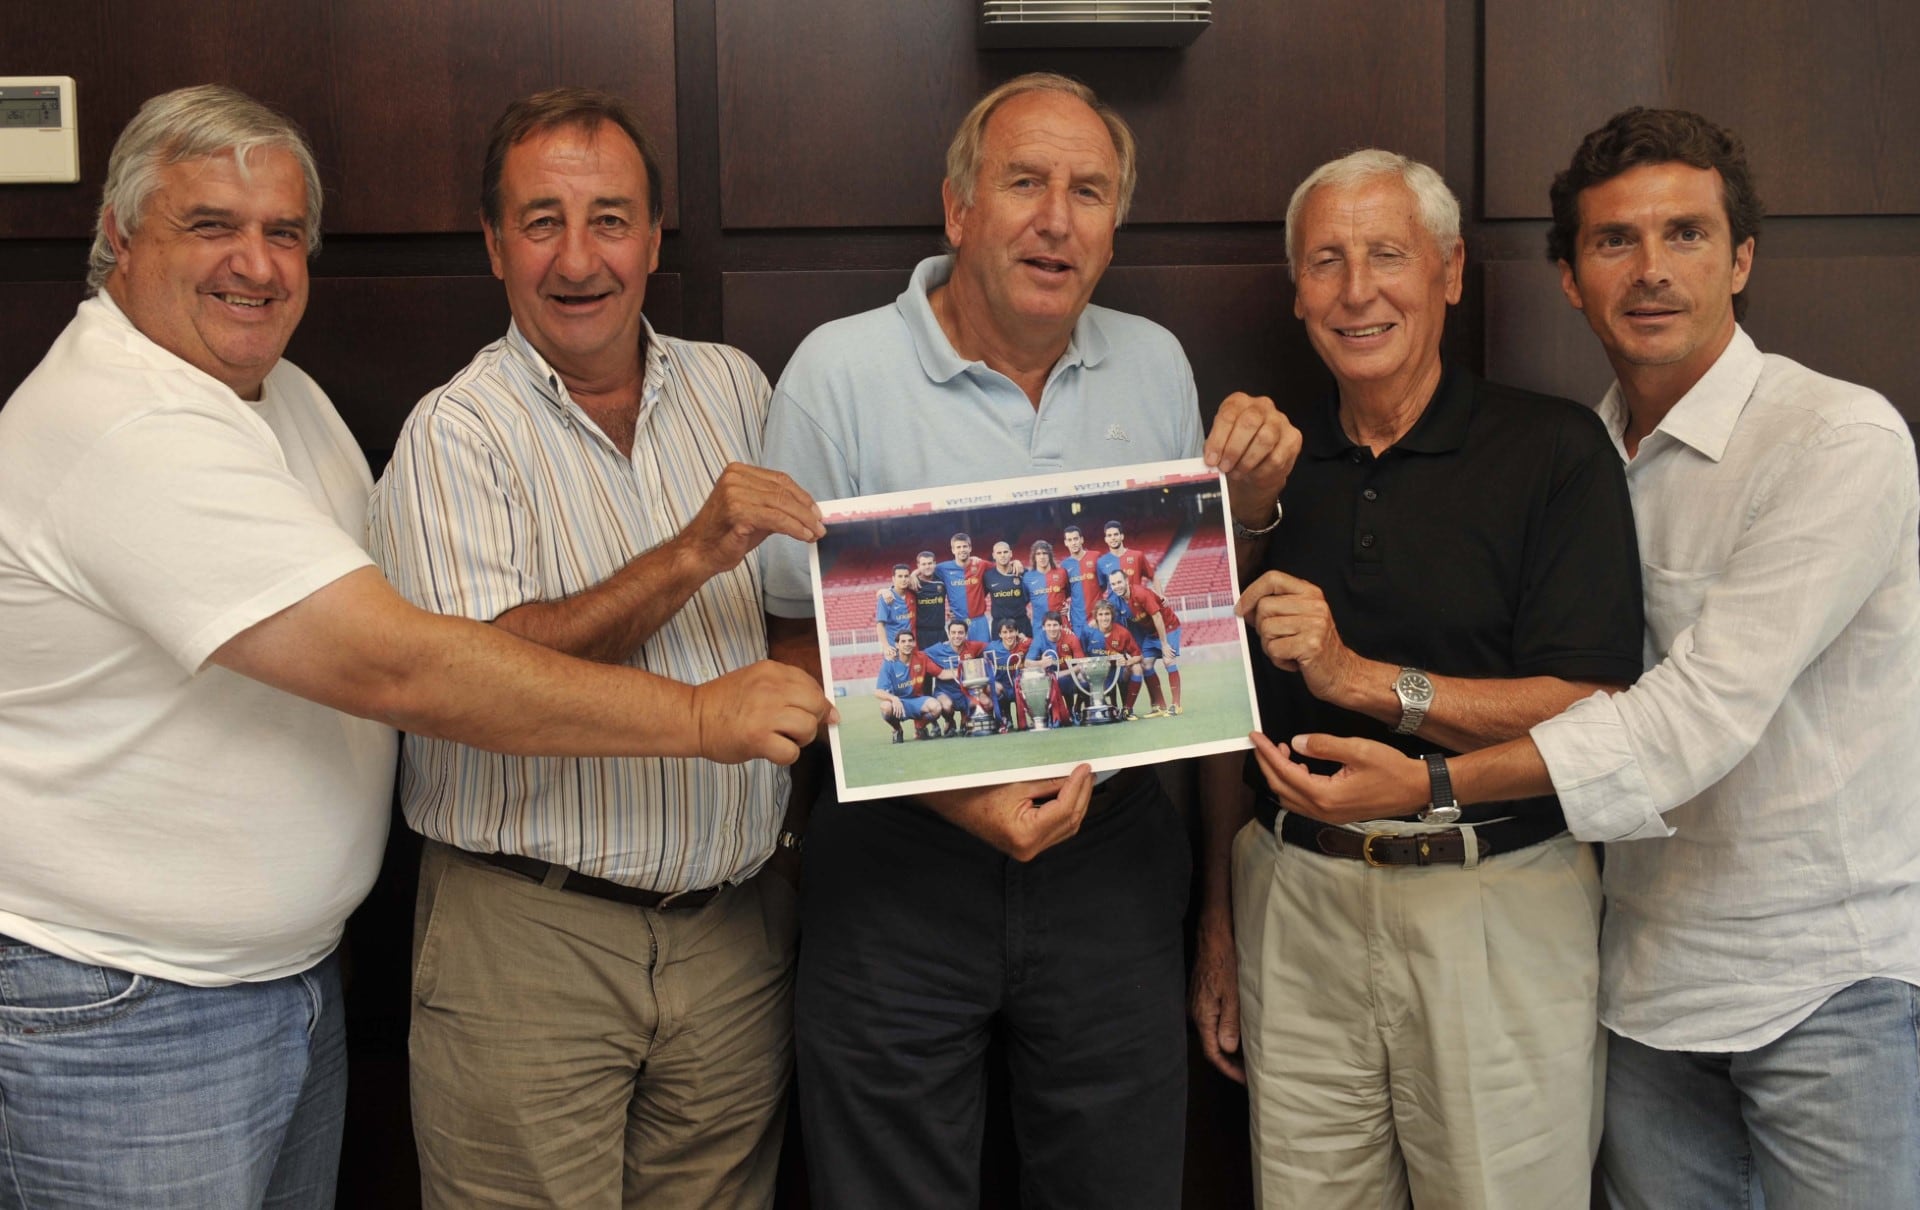 Jaume Olivé (segundo por la derecha) posa con la foto de los canteranos del Barça que lograron el triplete en 2009. Imagen cedida por Mundo Deportivo.